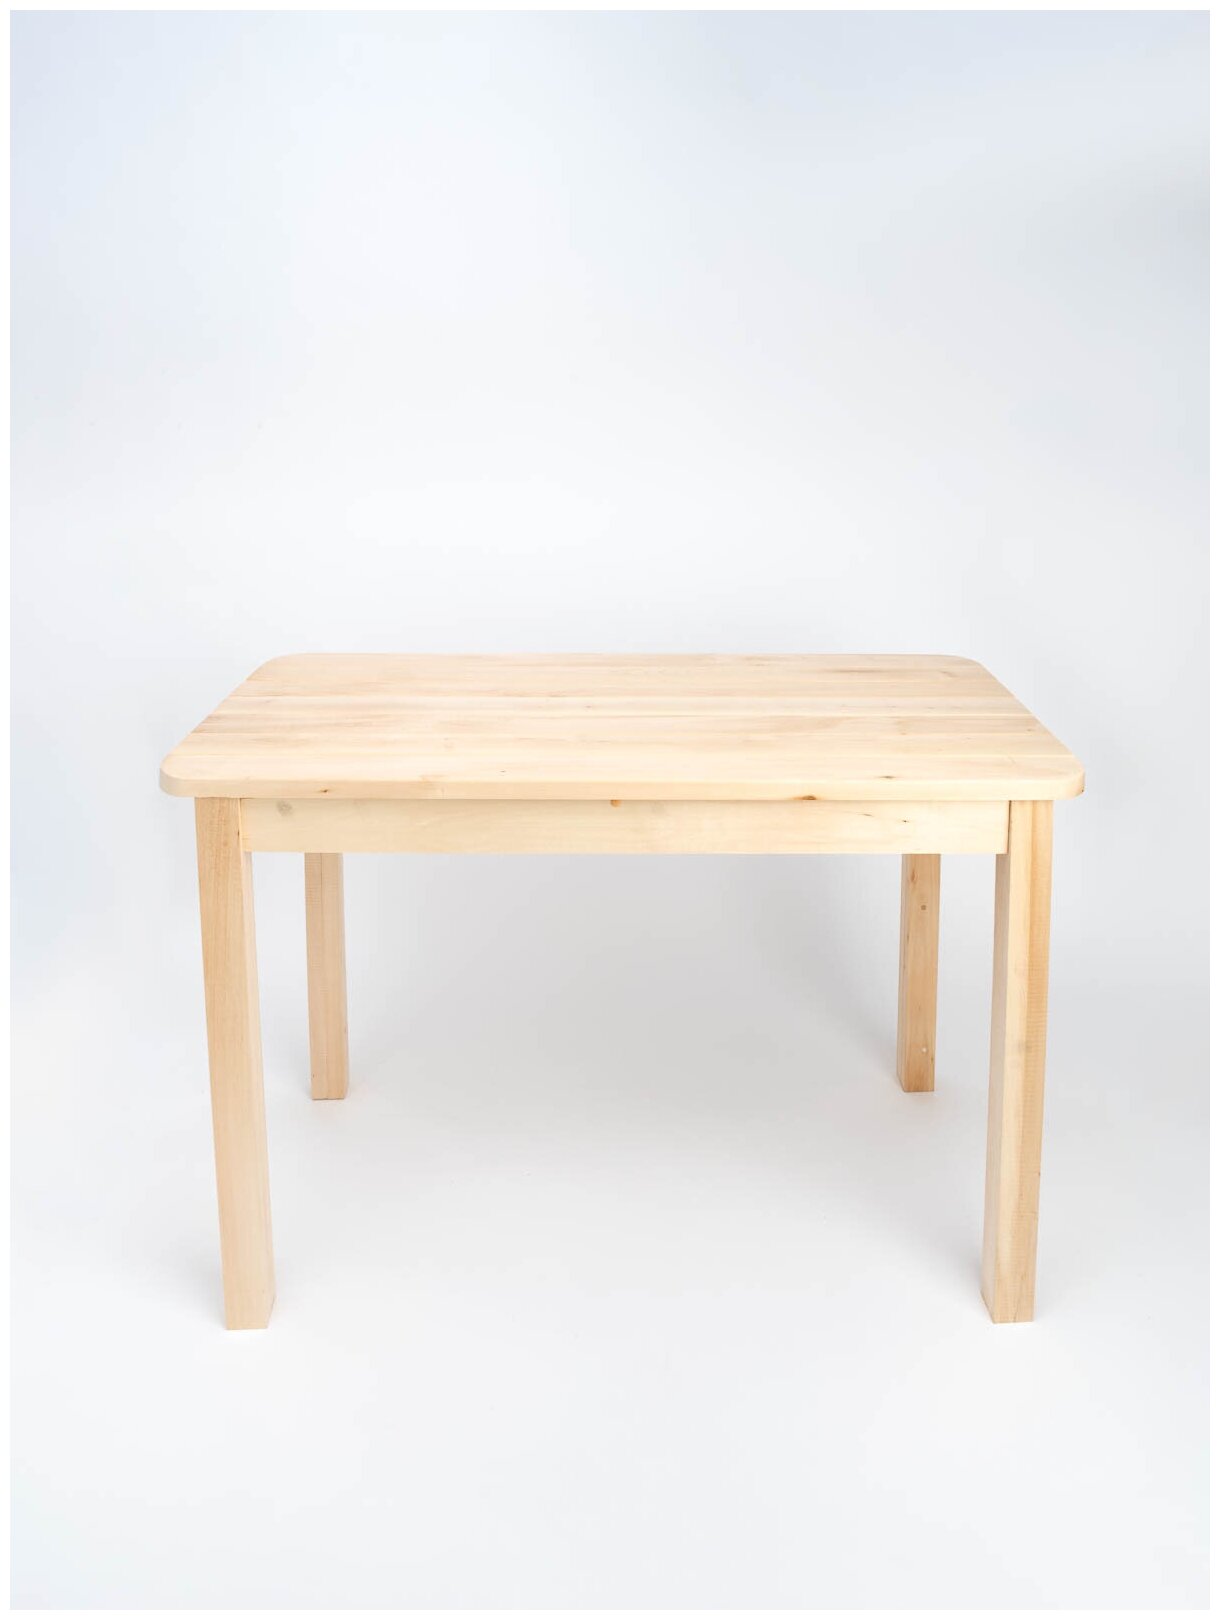 Стол прямоугольный KETT-UP ECO BIG HOLIDAY 100*60см KU360.100 обеденный деревянный